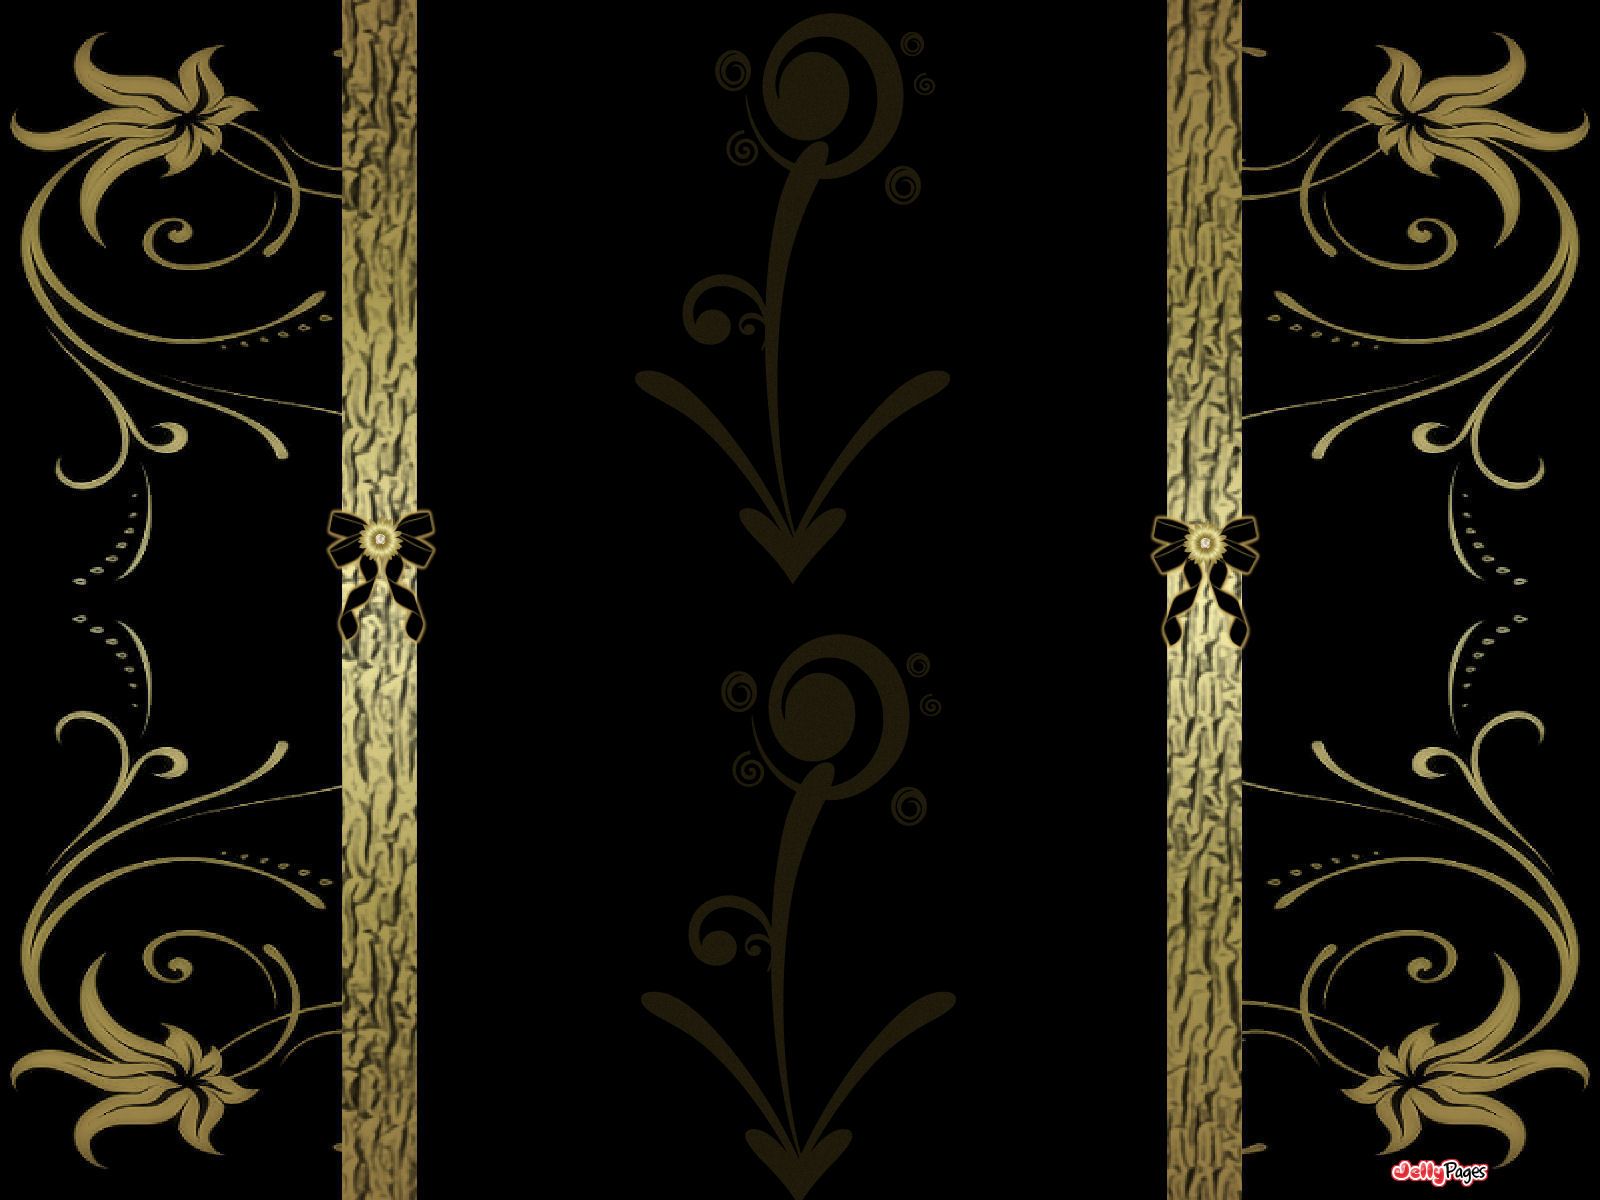 Black And Golden Wallpaper, Descarga de fondos de pantalla, (49